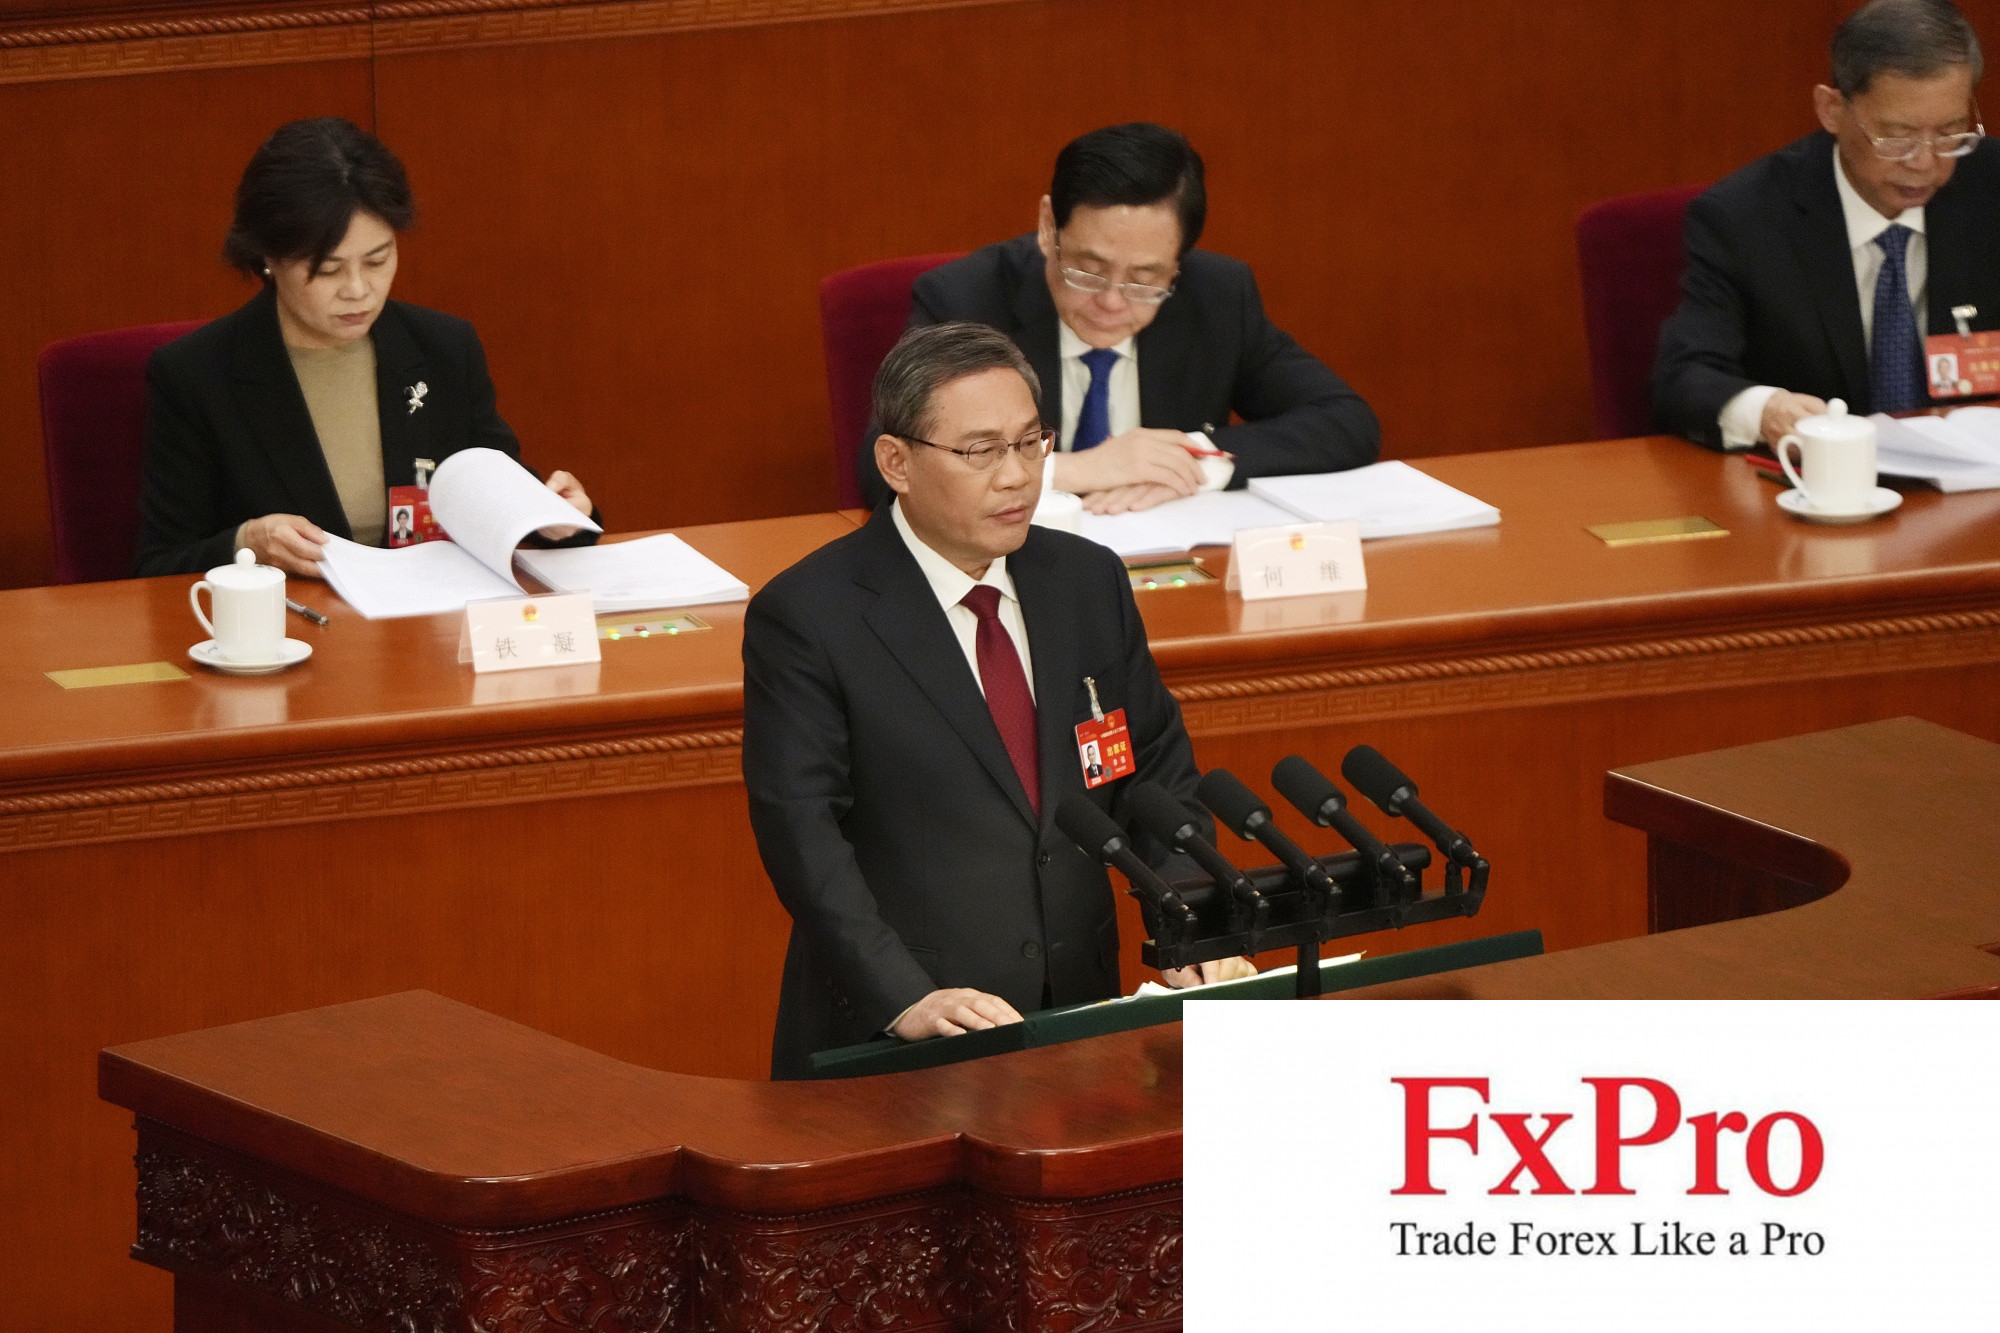 Năm điểm đáng chú ý từ báo cáo của Thủ tướng Trung Quốc Lý Cường tại đại hội Đại biểu nhân dân toàn quốc Trung Hoa